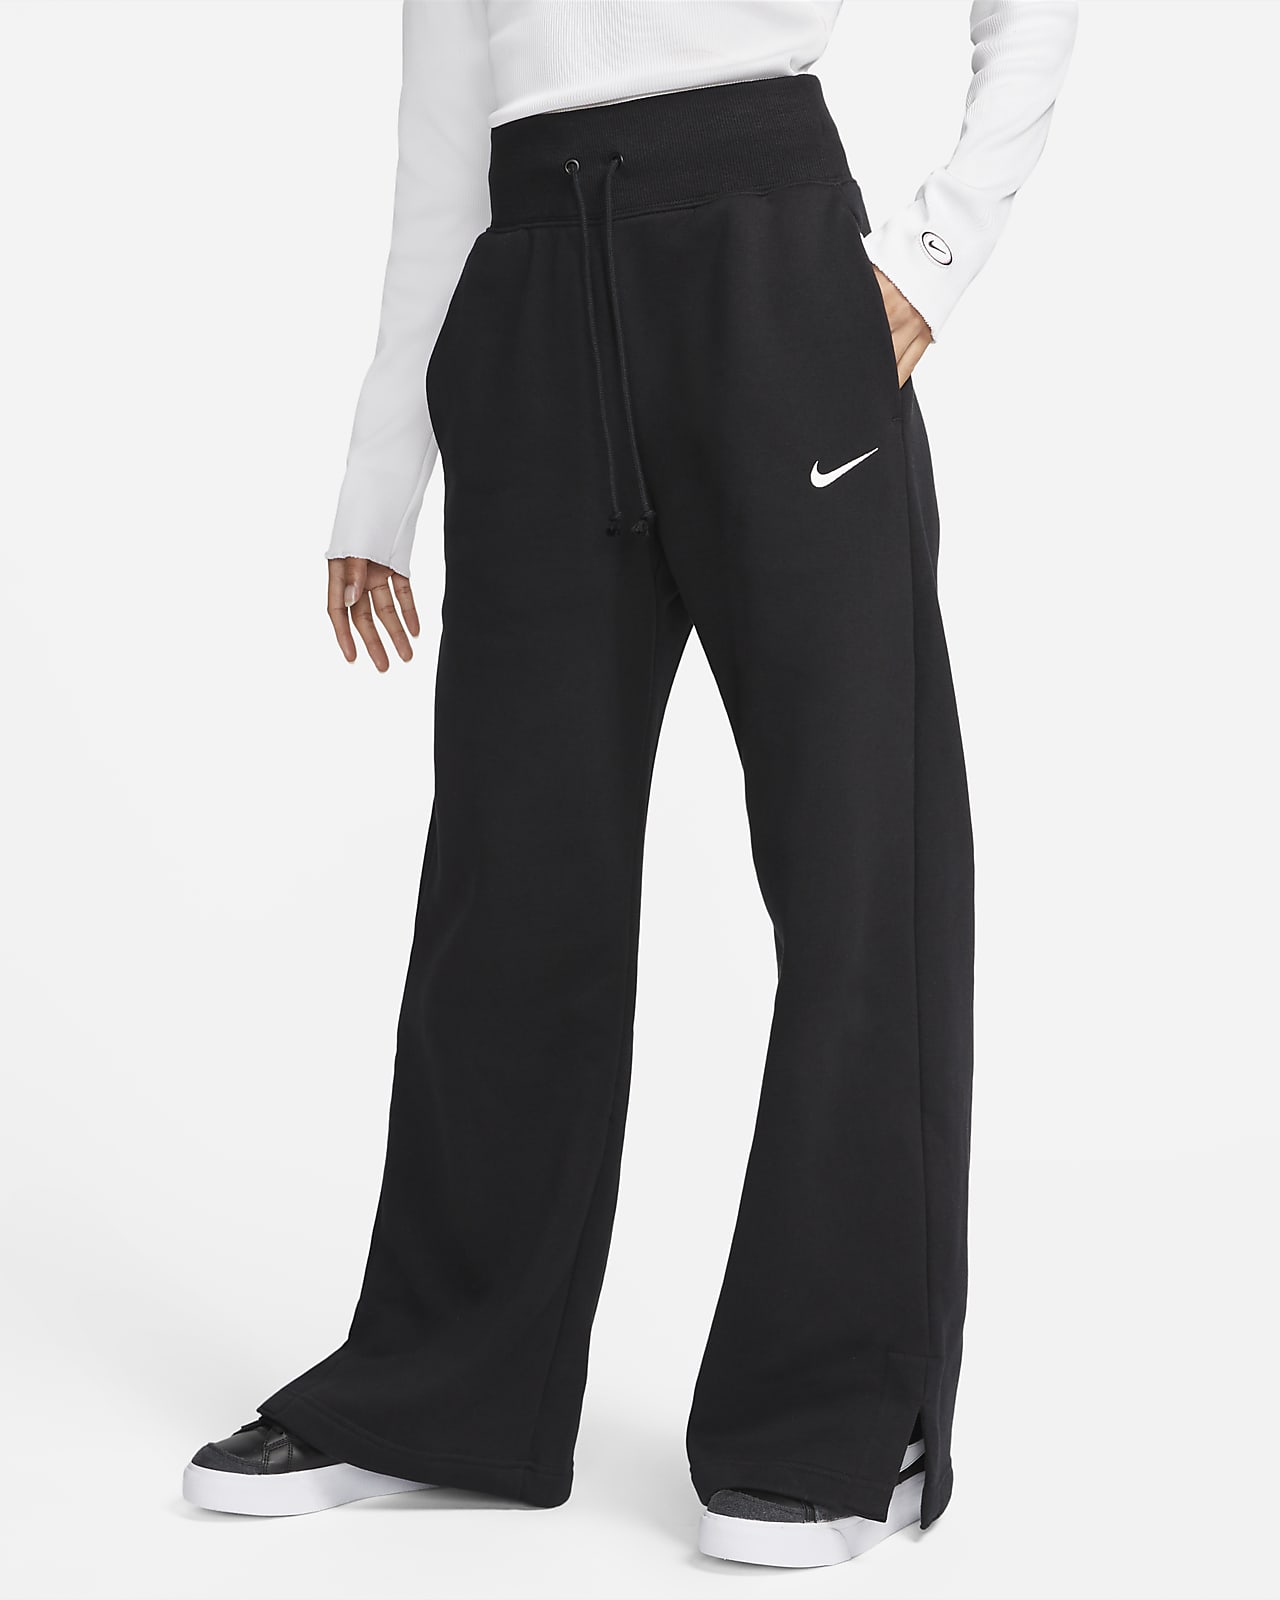 Dámské tepláky s širokými nohavicemi a vysokým pasem Nike Sportswear Phoenix Fleece 